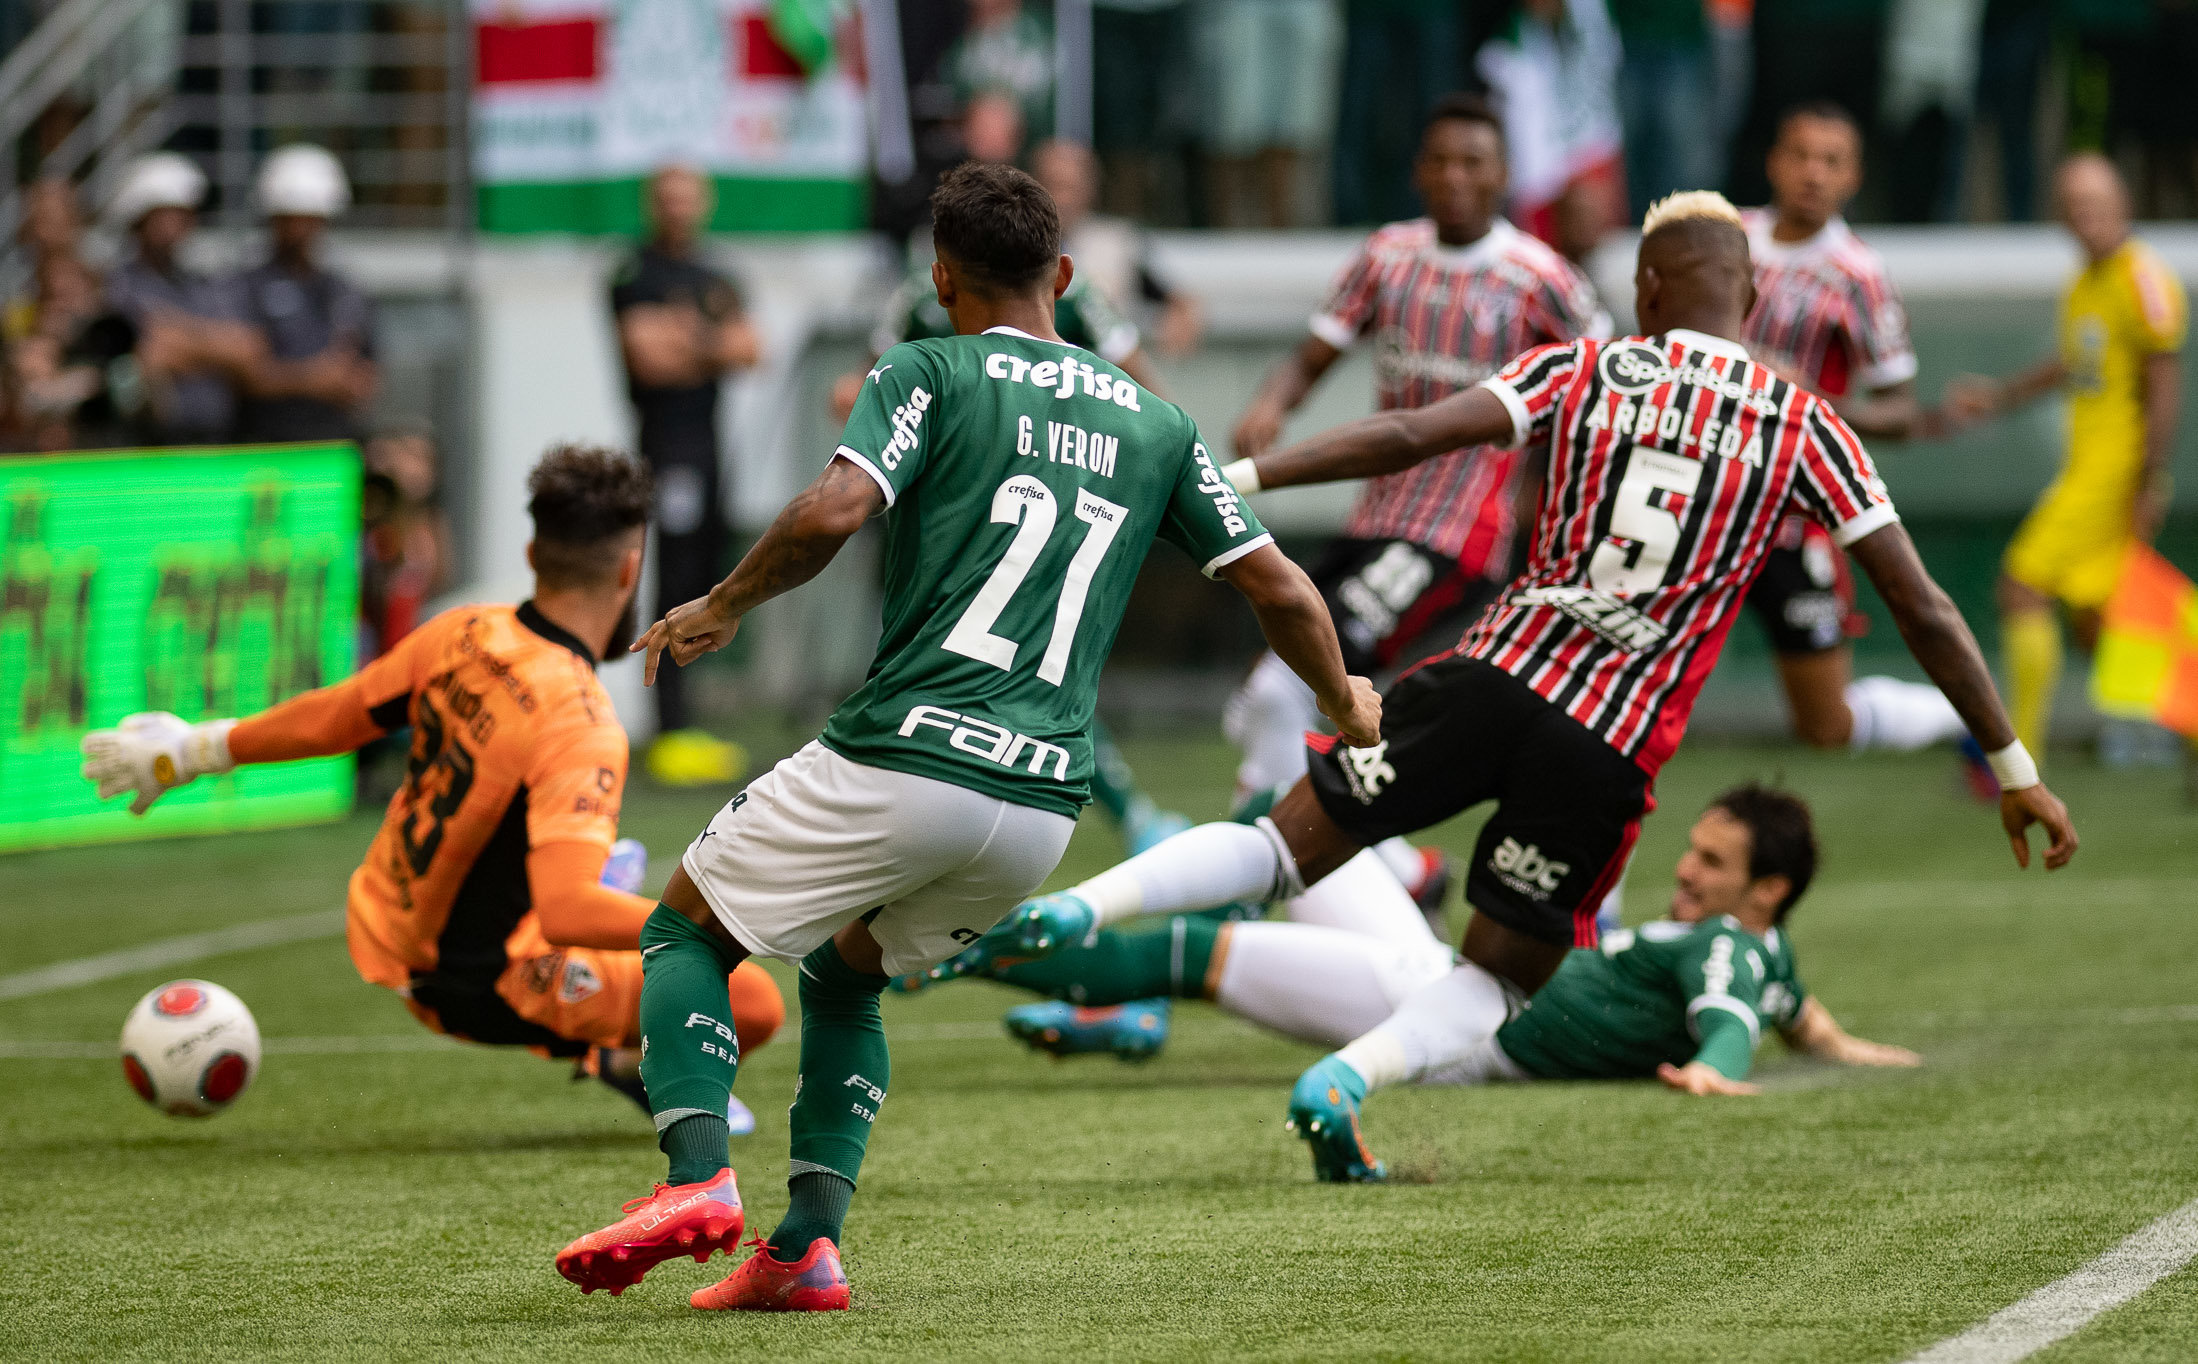 Paulistão 2022 Palmeiras 1×0 Santo André: resultado magro, mas foi  tranquilo - 3VV